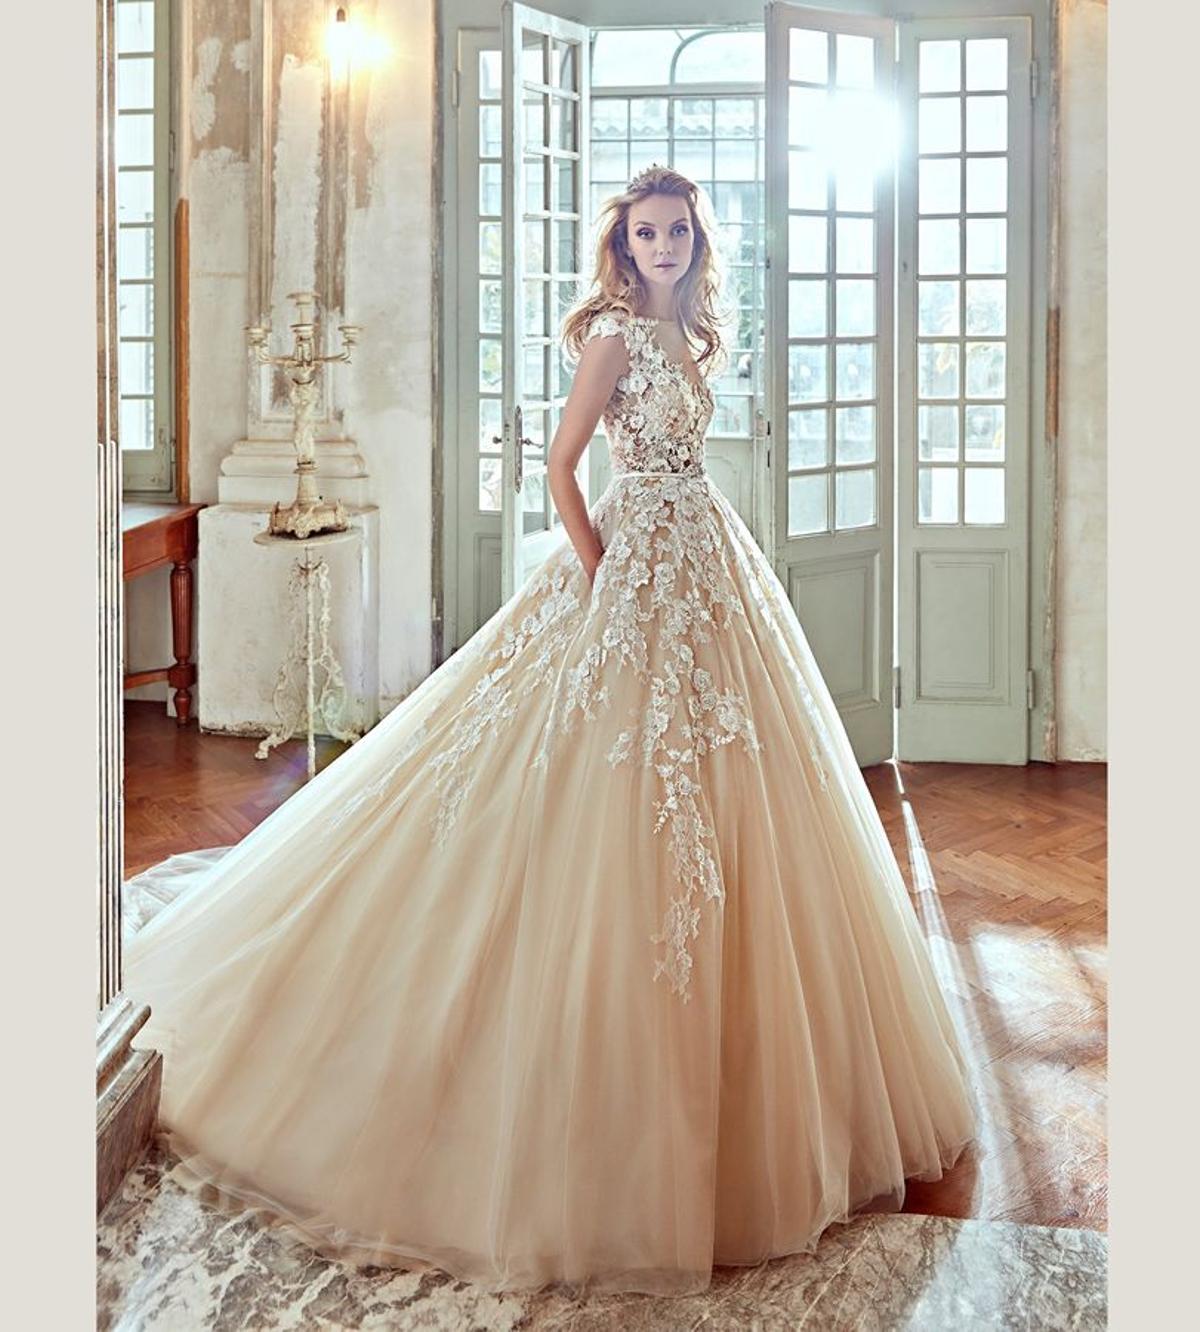 8 vestidos de novia con encaje: vestido de corte princesa con delicado encaje floral bordado